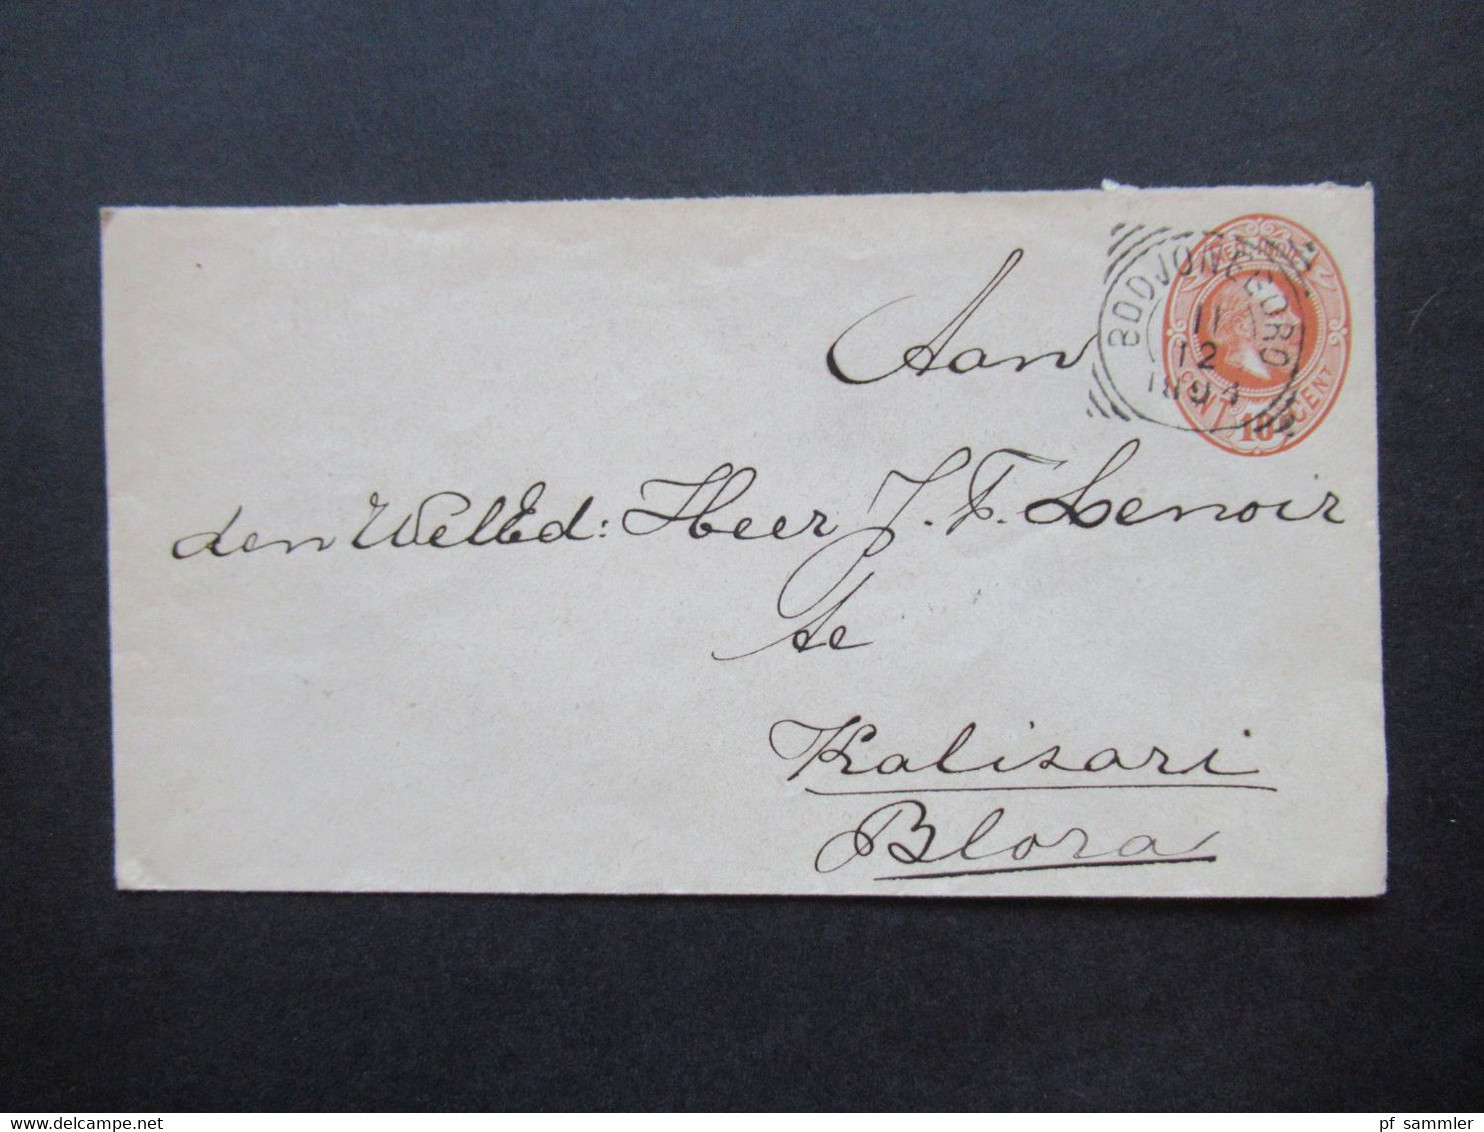 Niederländisch Indien 1894 GA Umschlag Mit 4 Stempeln U.a. Bodjonegoro Nach Blaza Gesendet Auslandsbrief - Niederländisch-Indien